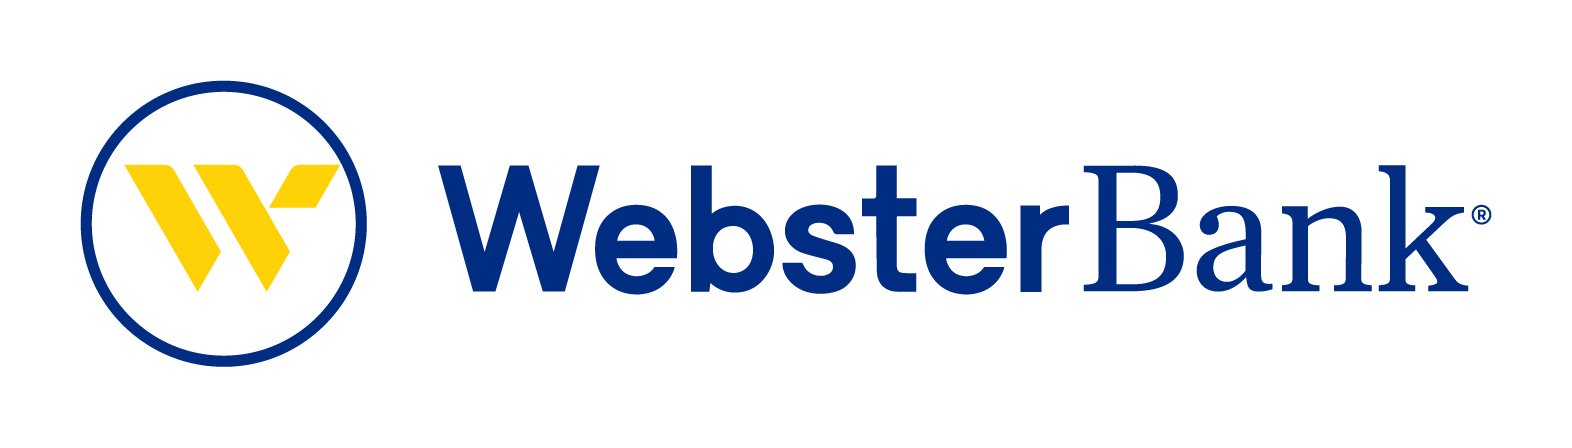 20Webster-Websterbank-lockup-rbg.jpg